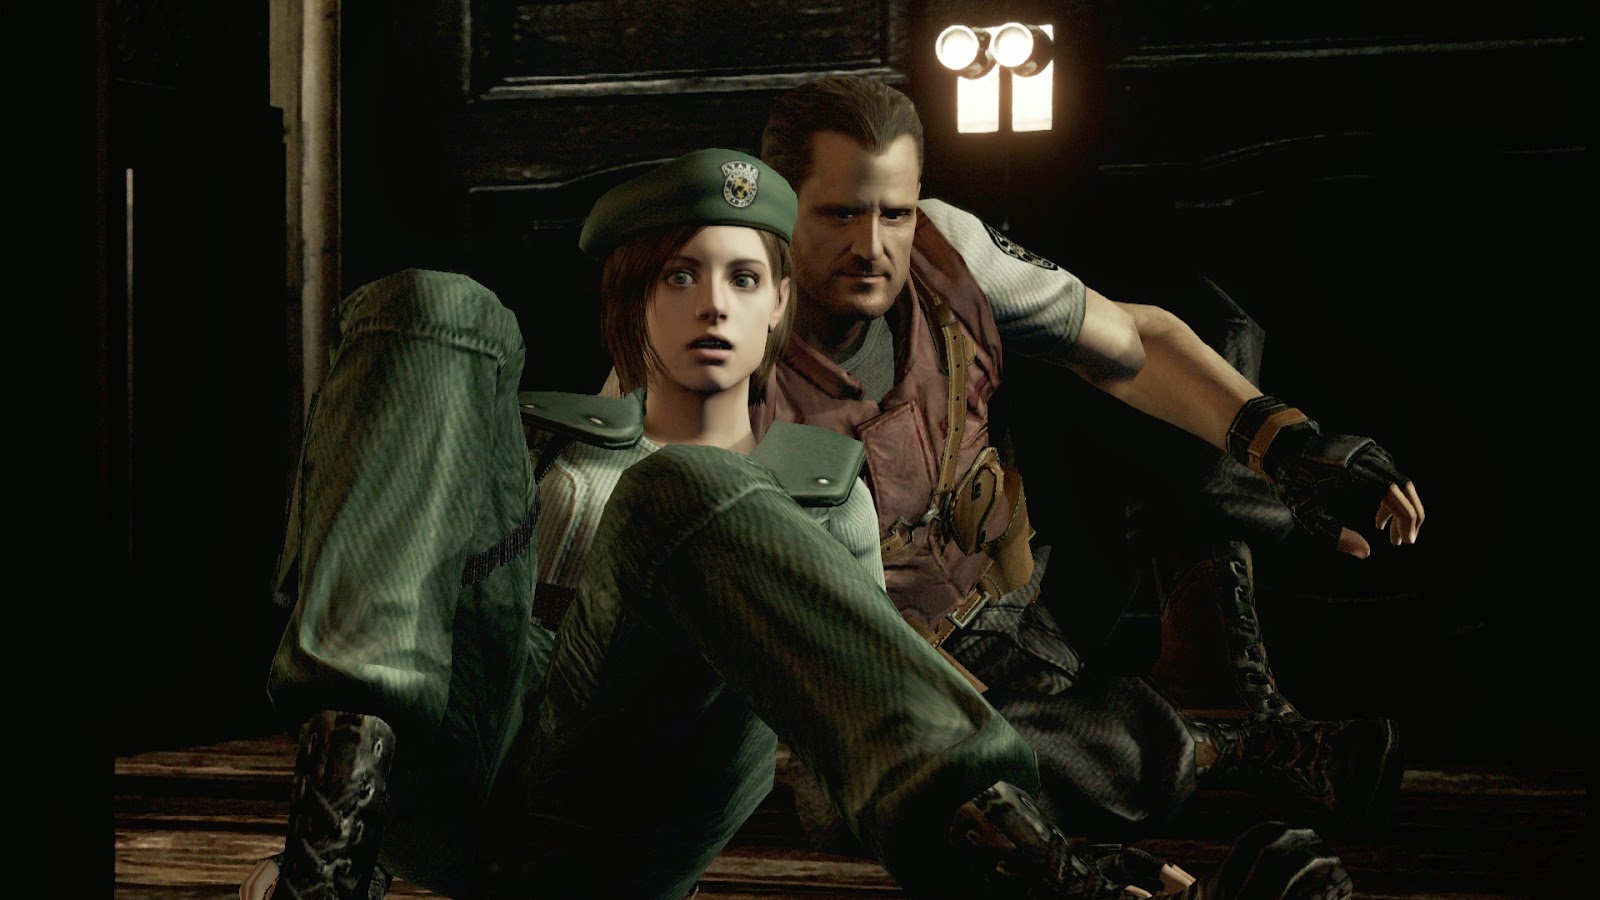 Resident Evil 5 - Personagens - REVIL